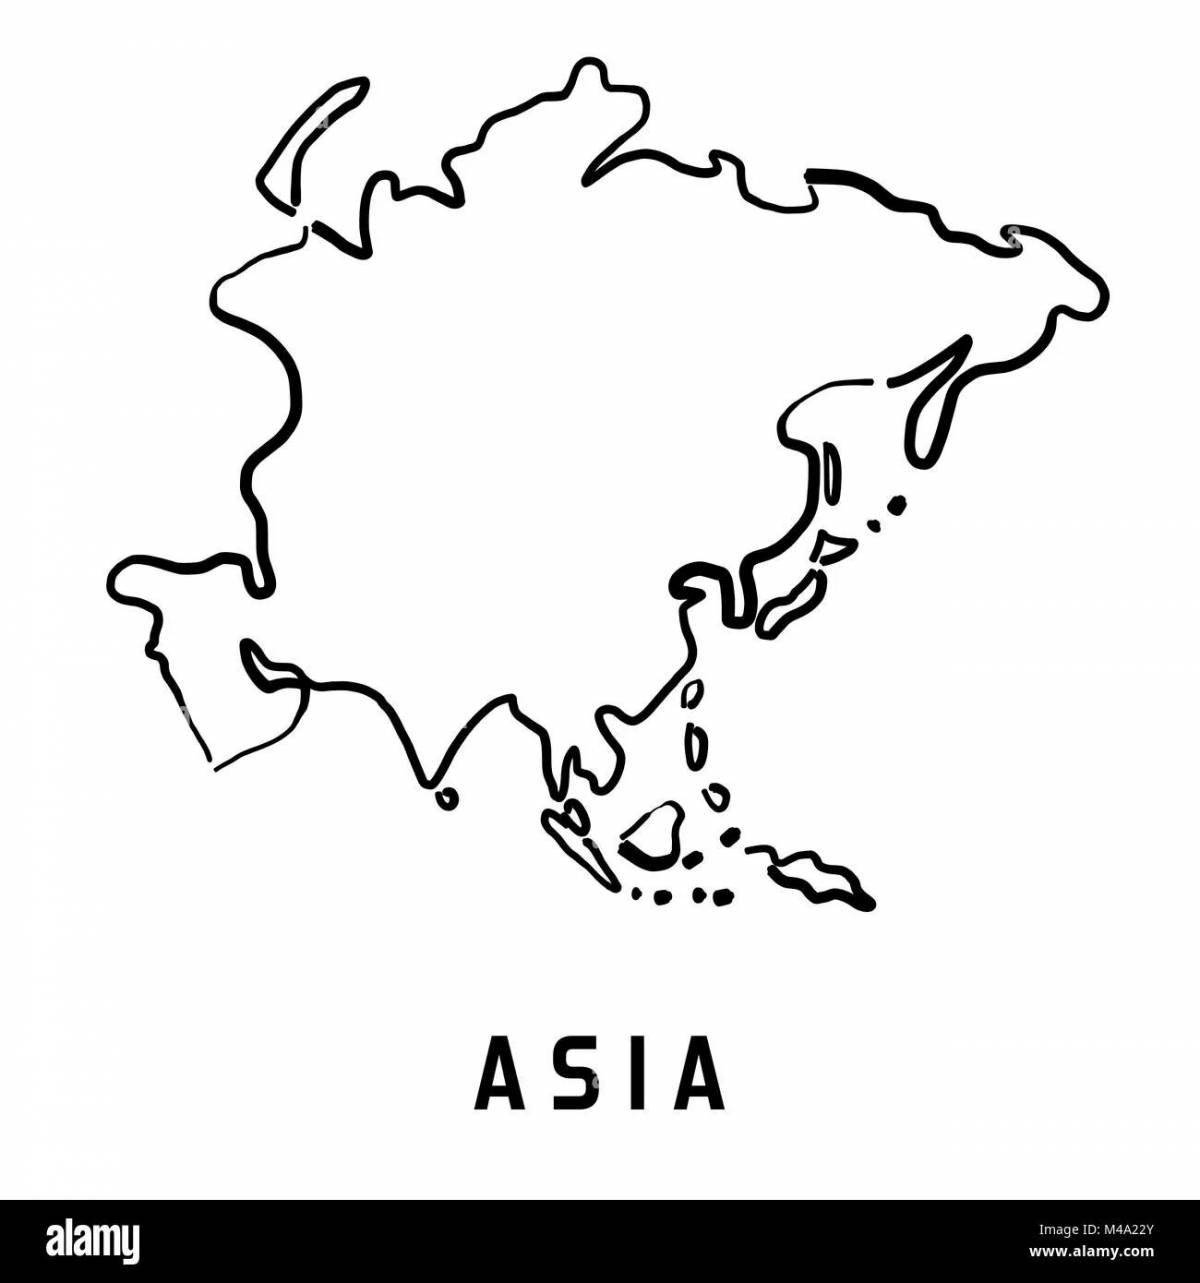 Увлекательная страница раскраски карты азии